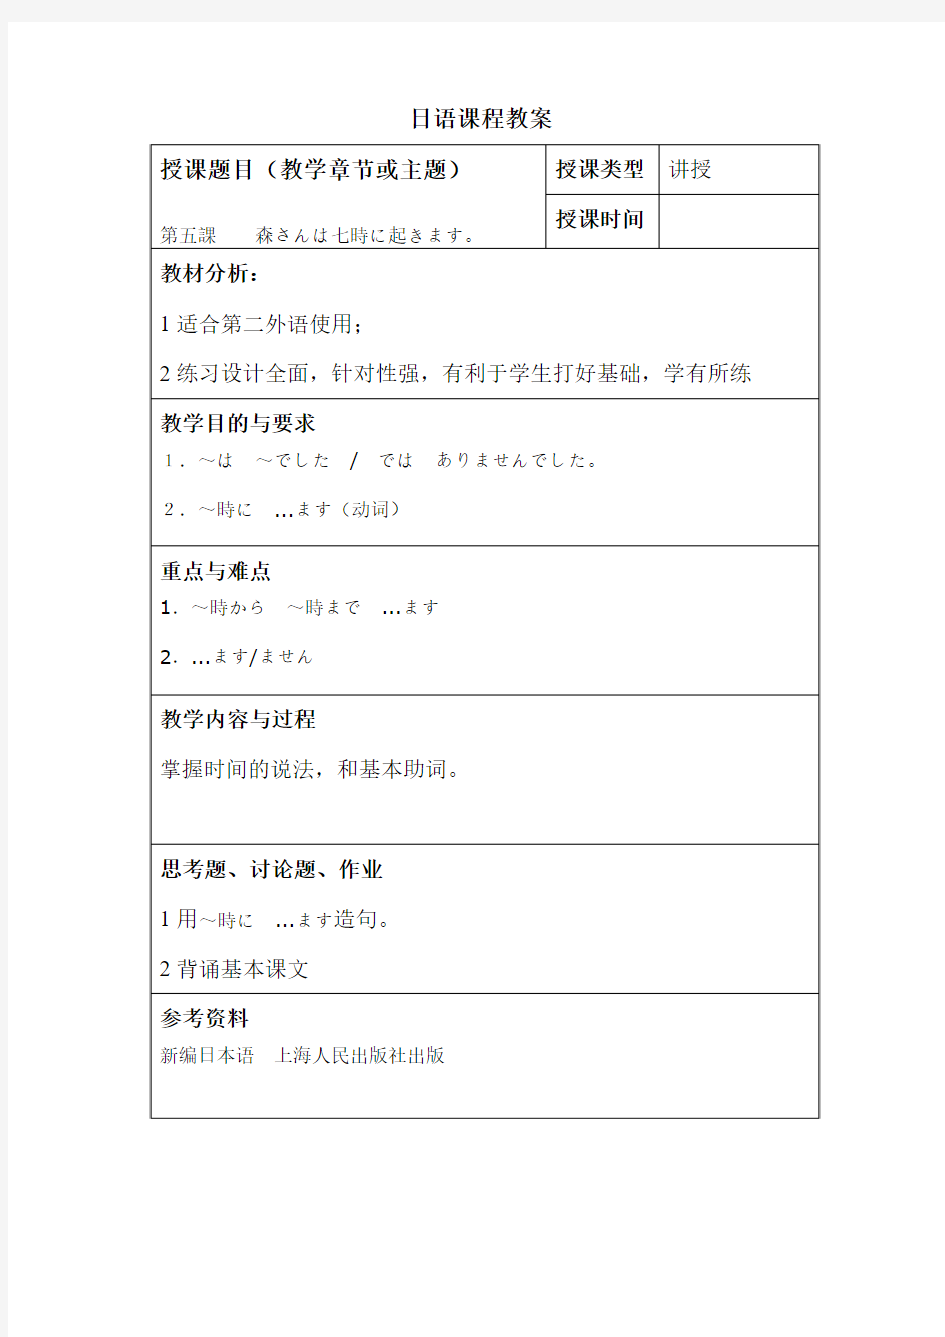 标准日本语教案 -第5课